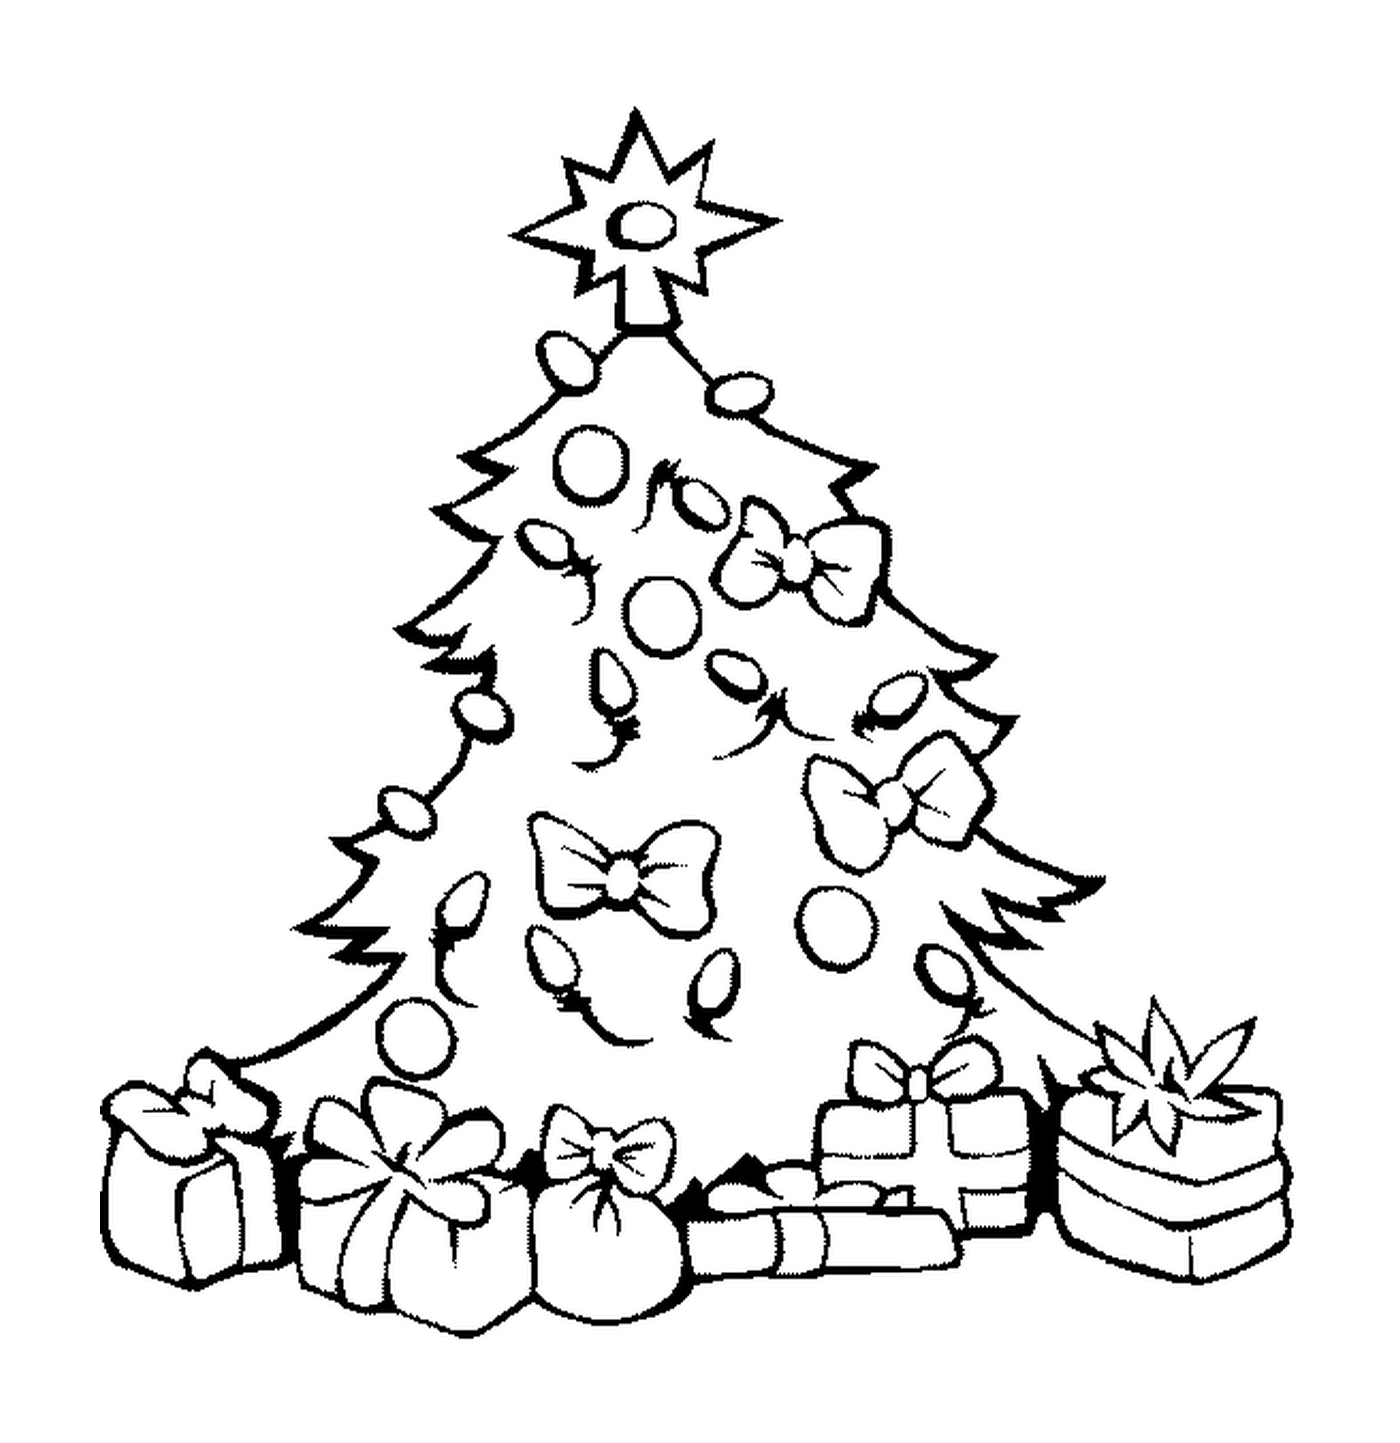  شجرة عيد الميلاد مع الكرات والهدايا 